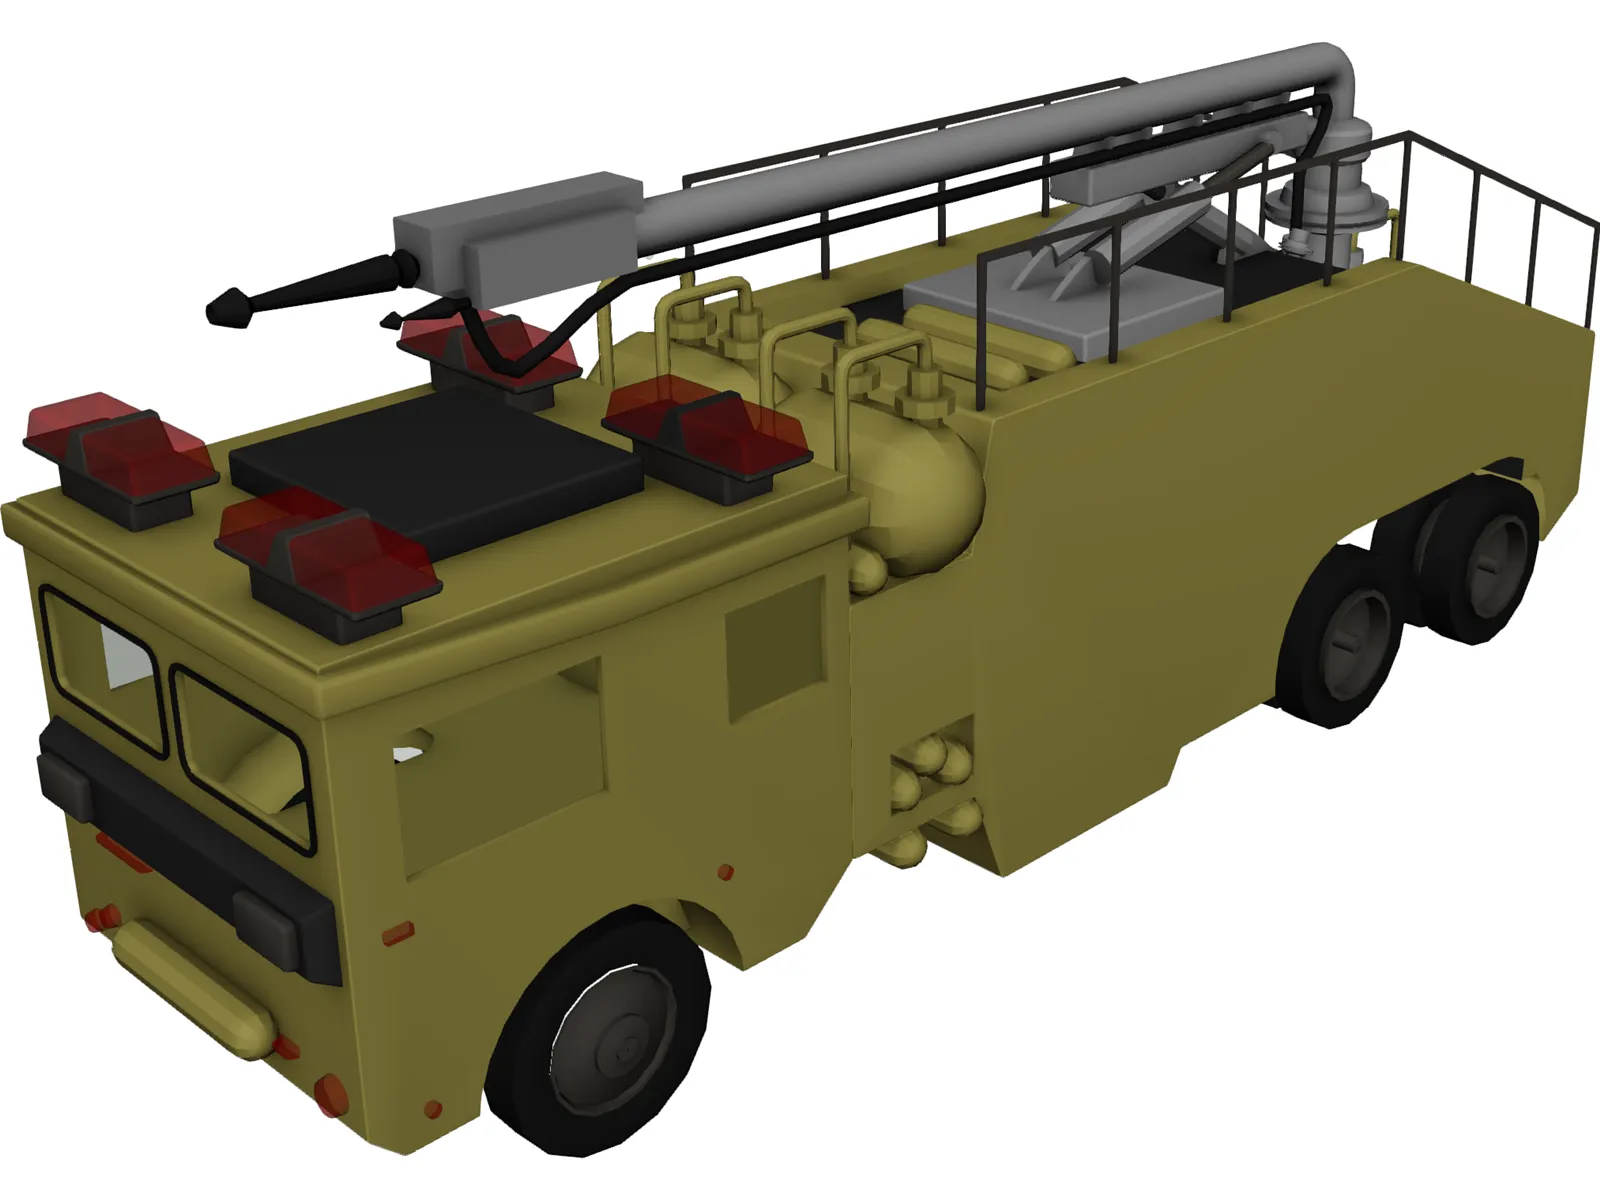 Airport Fire Truck 3D Model